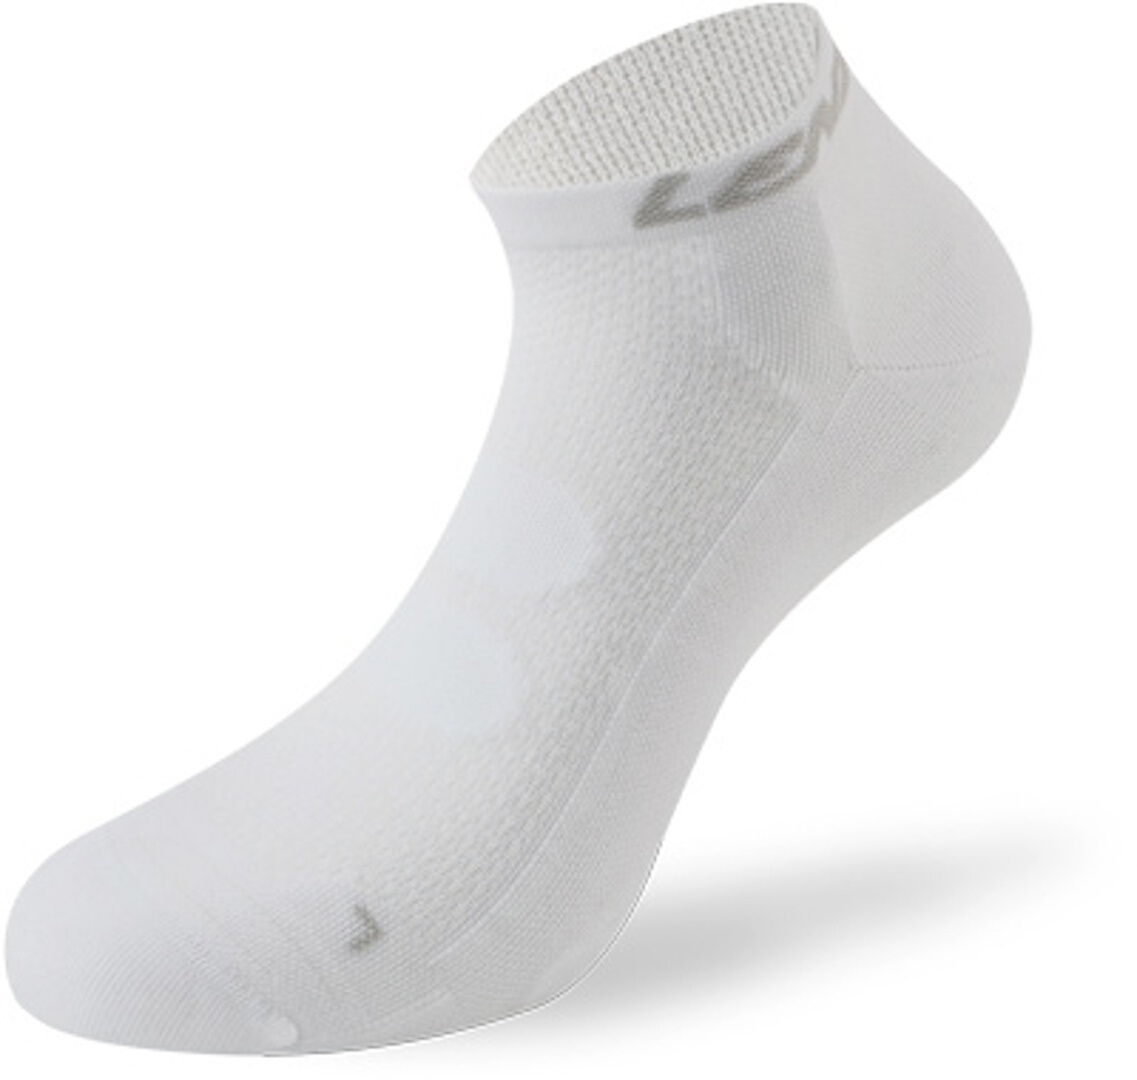 Lenz 5.0 Short Kompression Socken, weiss, Größe 39 40 41